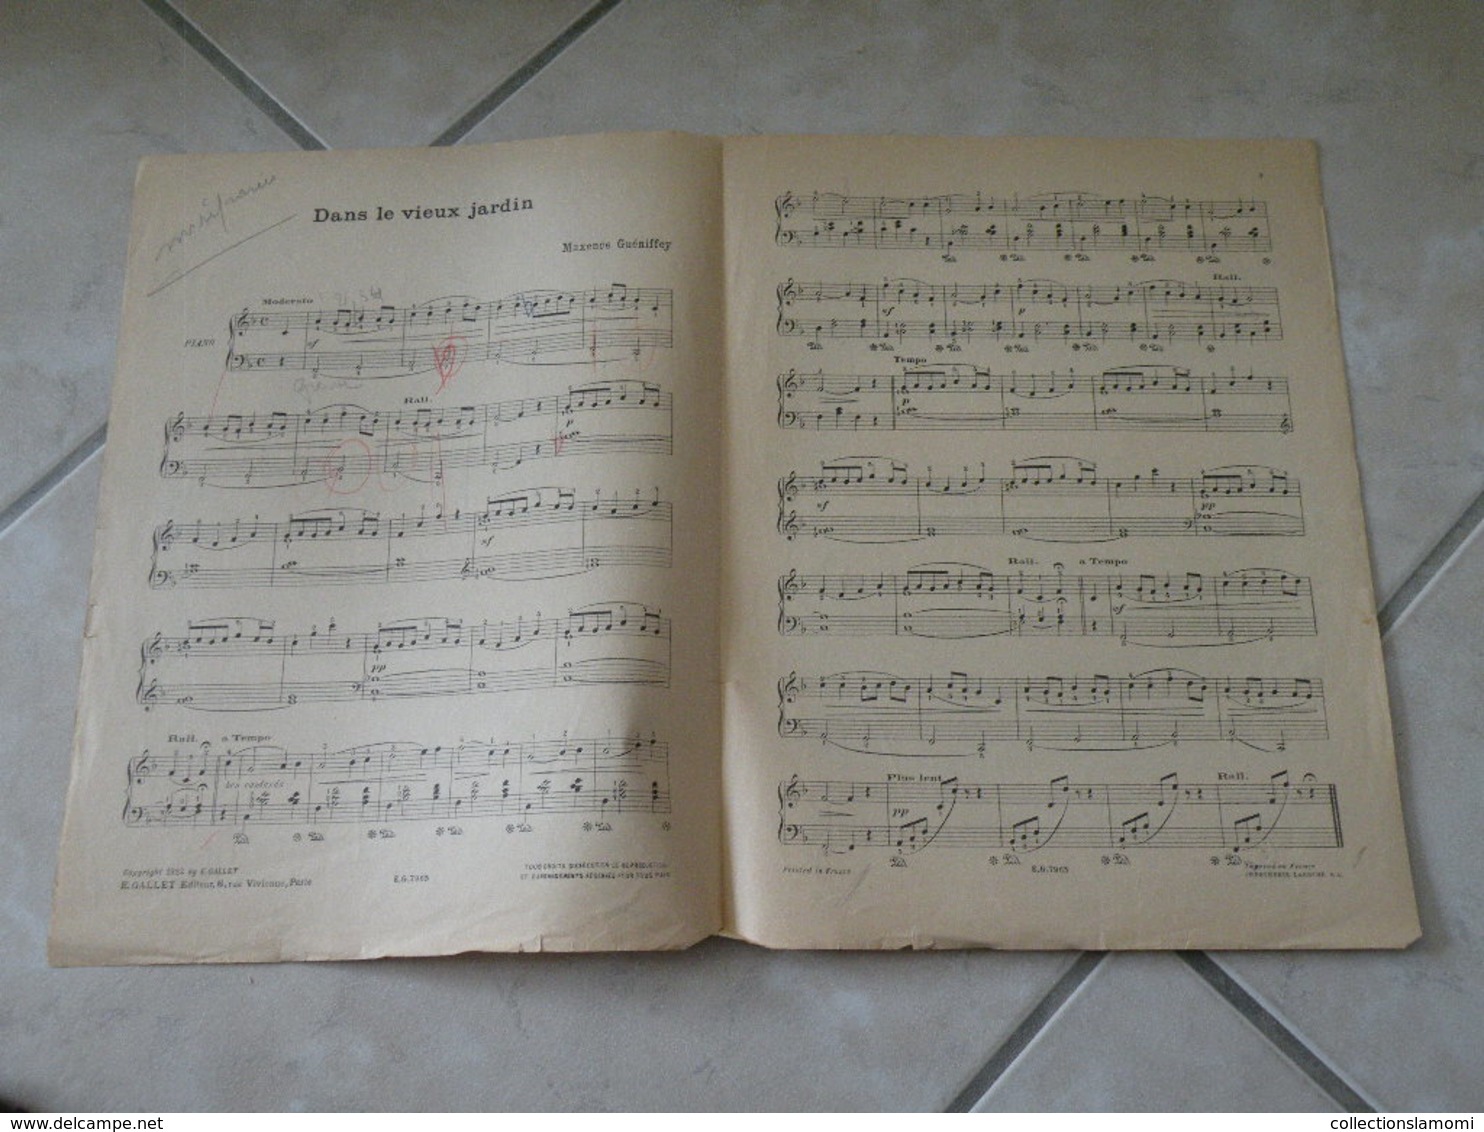 Dans Le Vieux Jardin & Trotte Petit ânon -(Musique Maxence Guéniffey)- Partition (Piano) 1922 - Instruments à Clavier